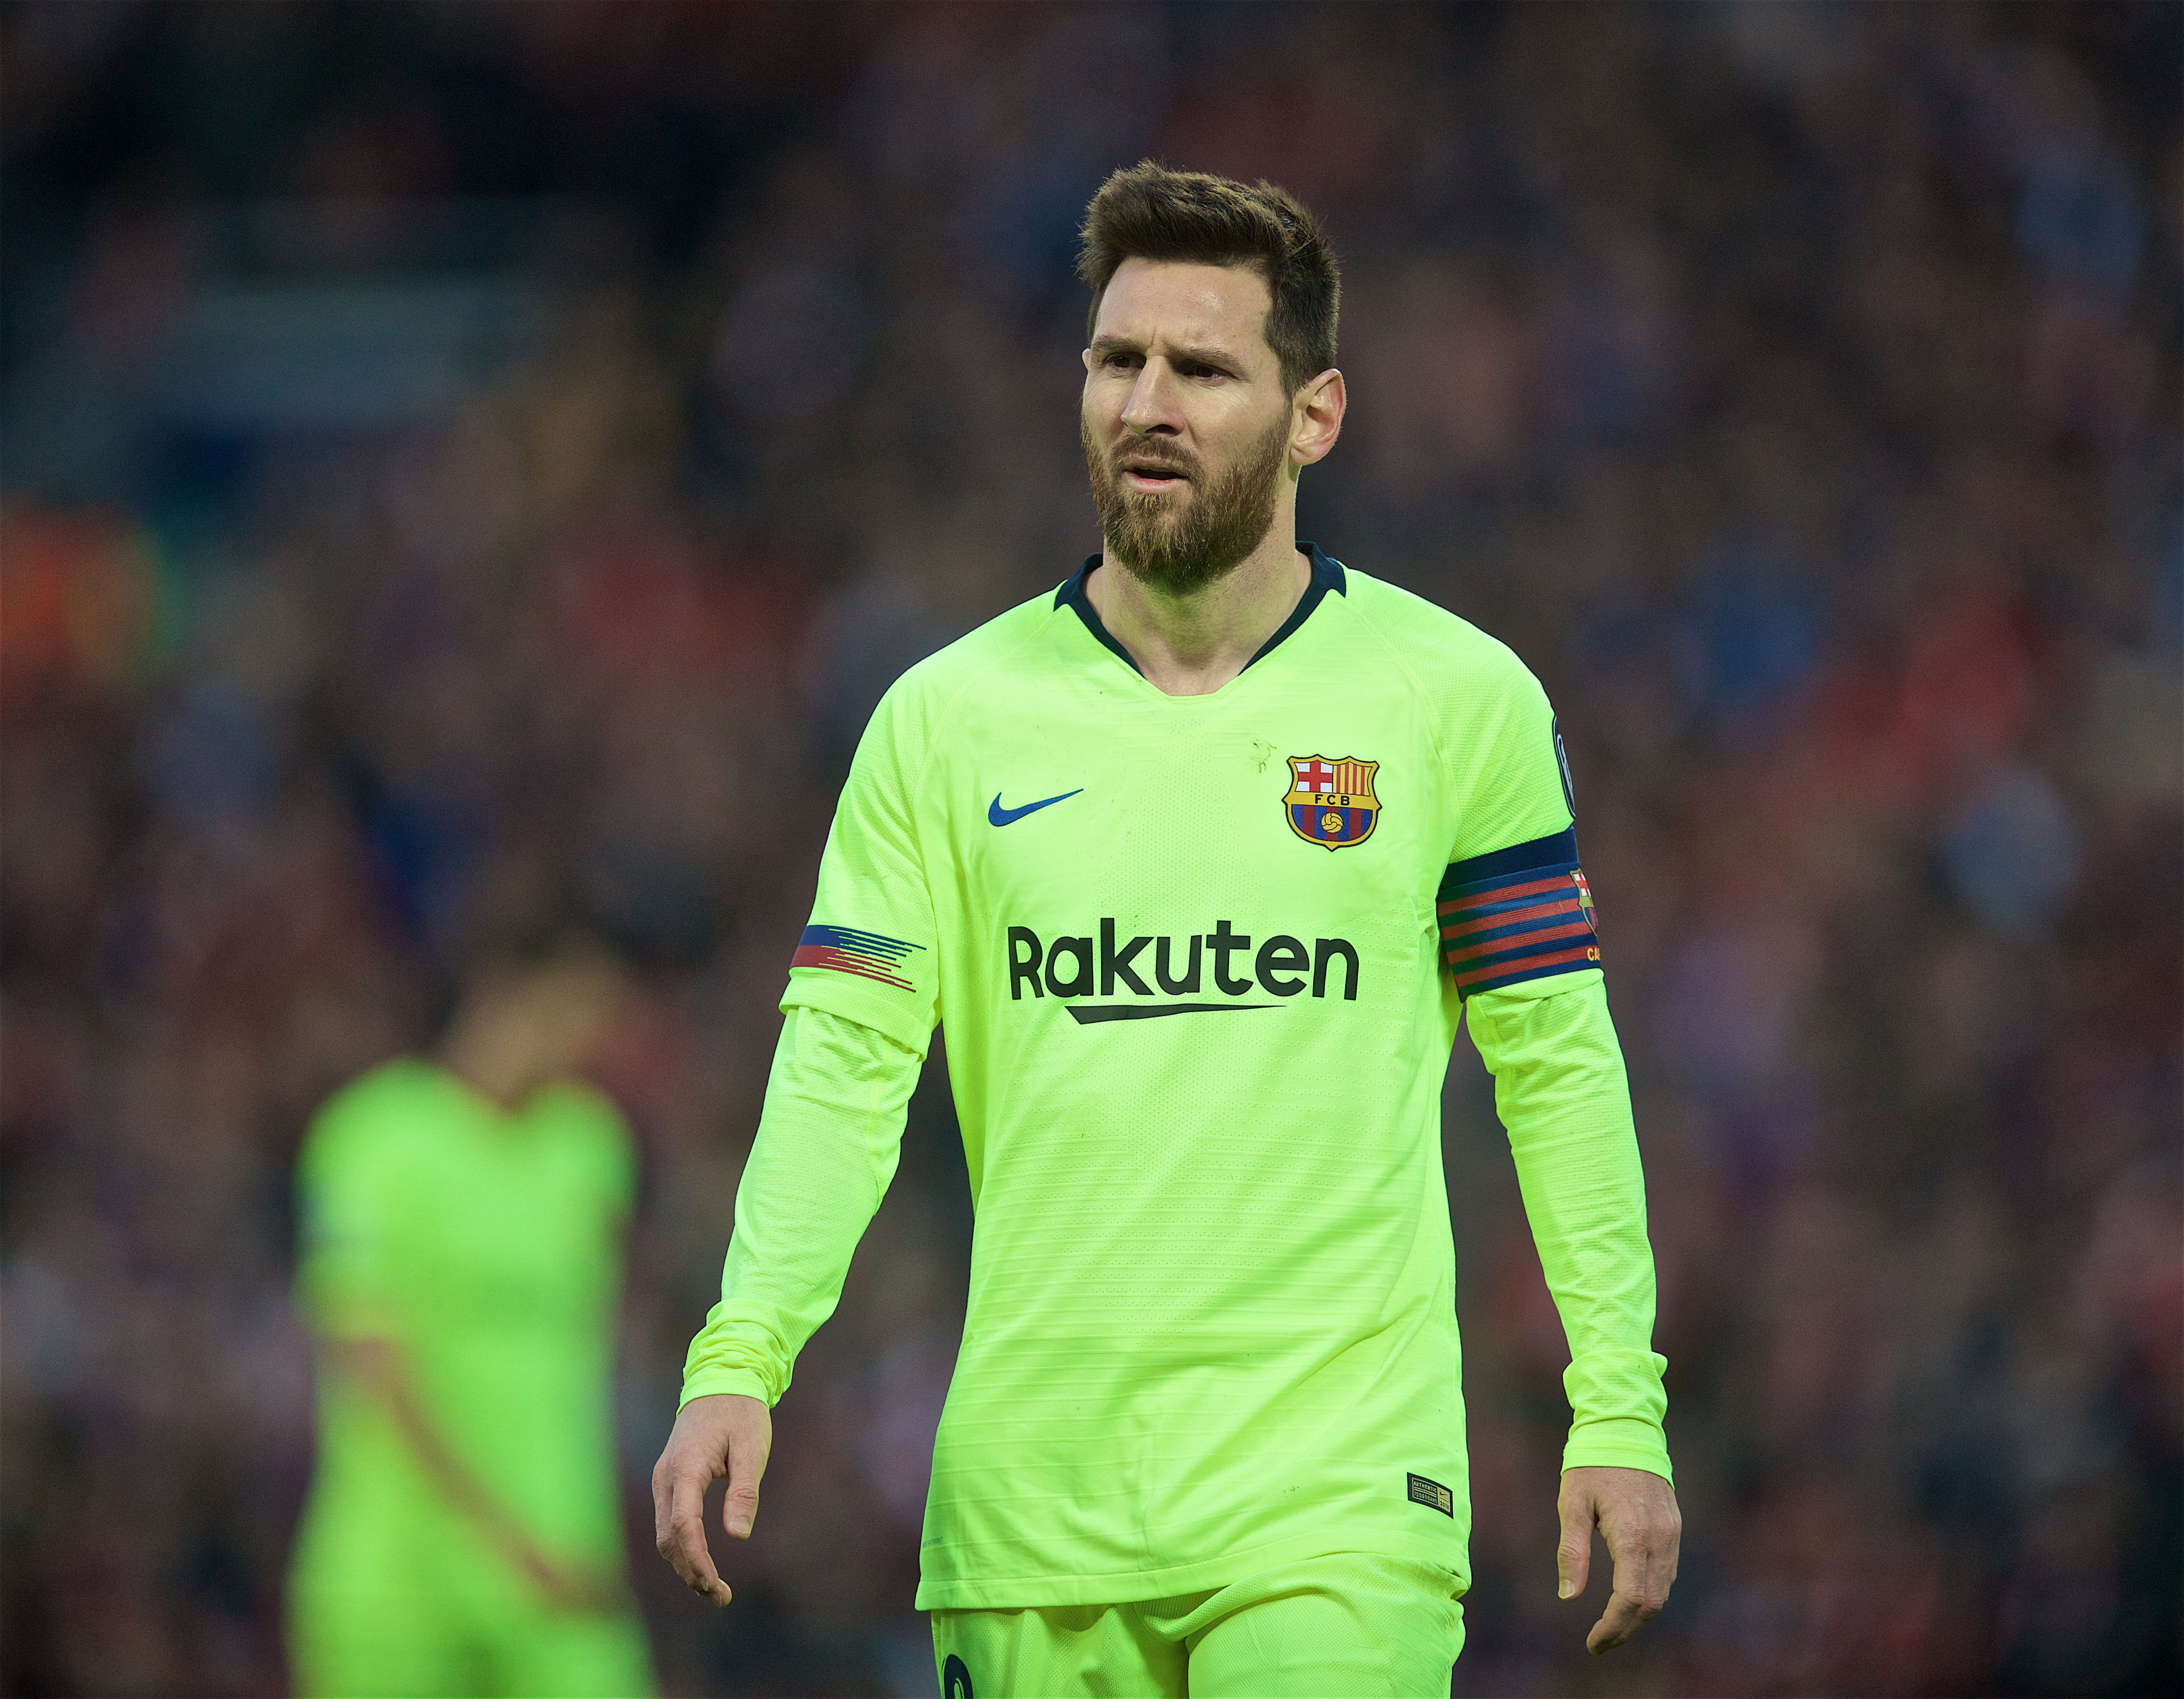 Ingyen távozhat az FC Barcelonából Lionel Messi, legalábbis apja és egyben ügynöke, Jorge Messi erről tájékoztatta levélben a La Ligát. / Fotó: Northfoto